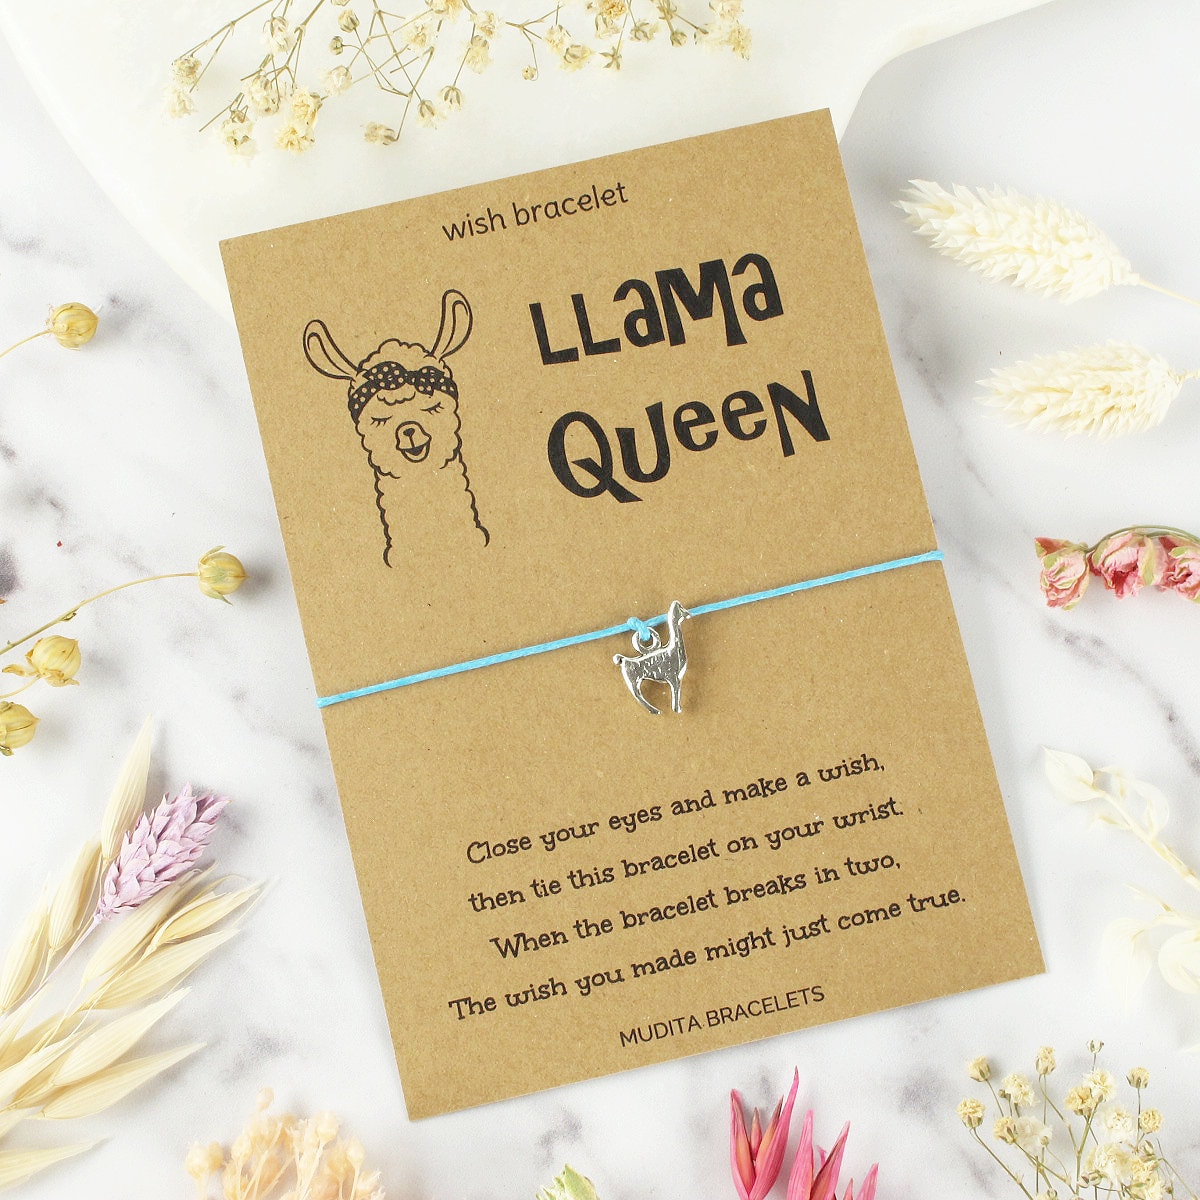 Llama Llama Charm Llama Queen Charm Bracelet Wish Bracelet 